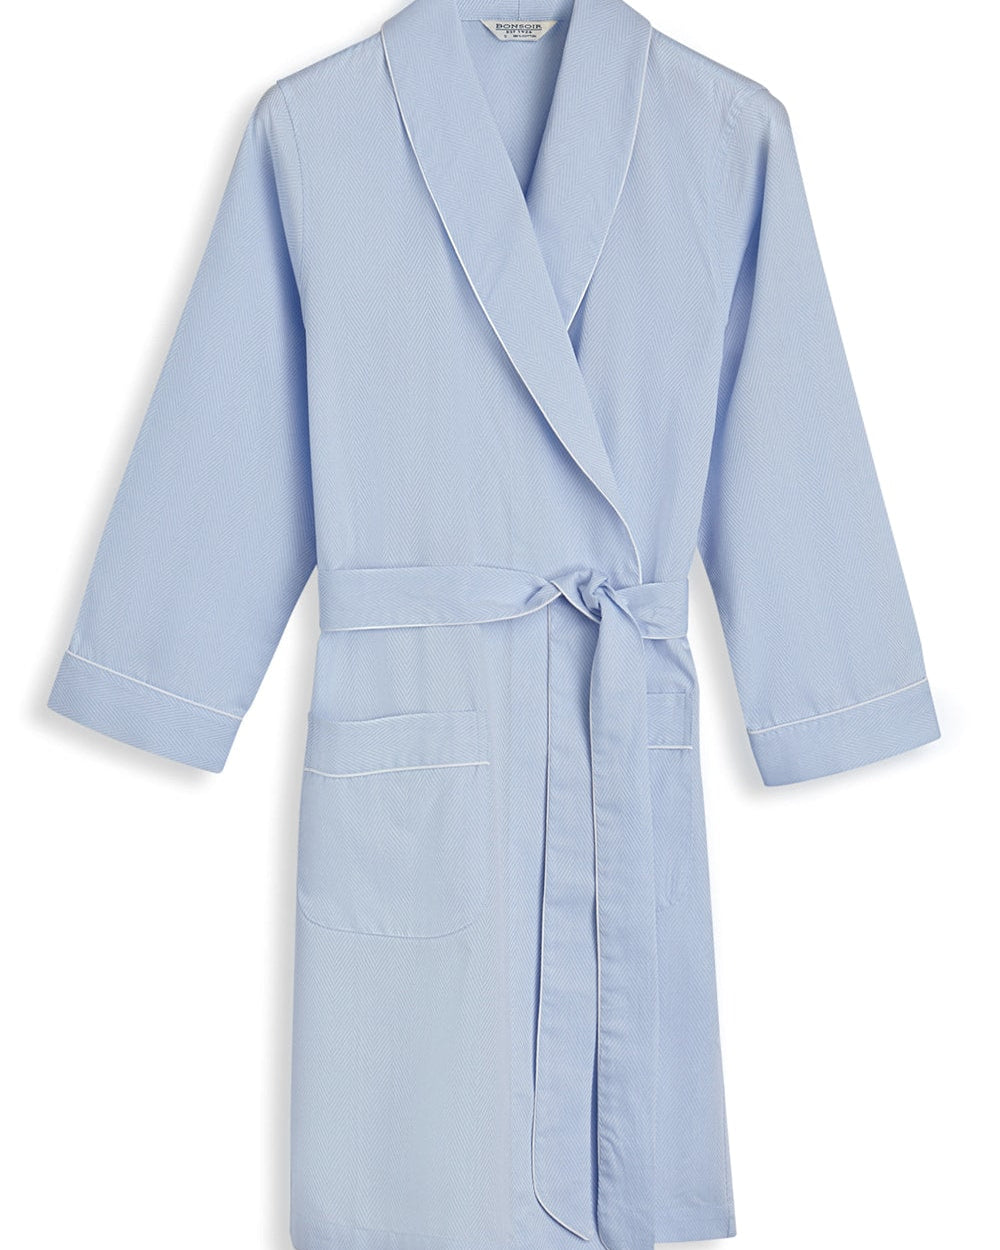 Women's Blue Jacquard Short Dressing Gown | Bonsoir of London